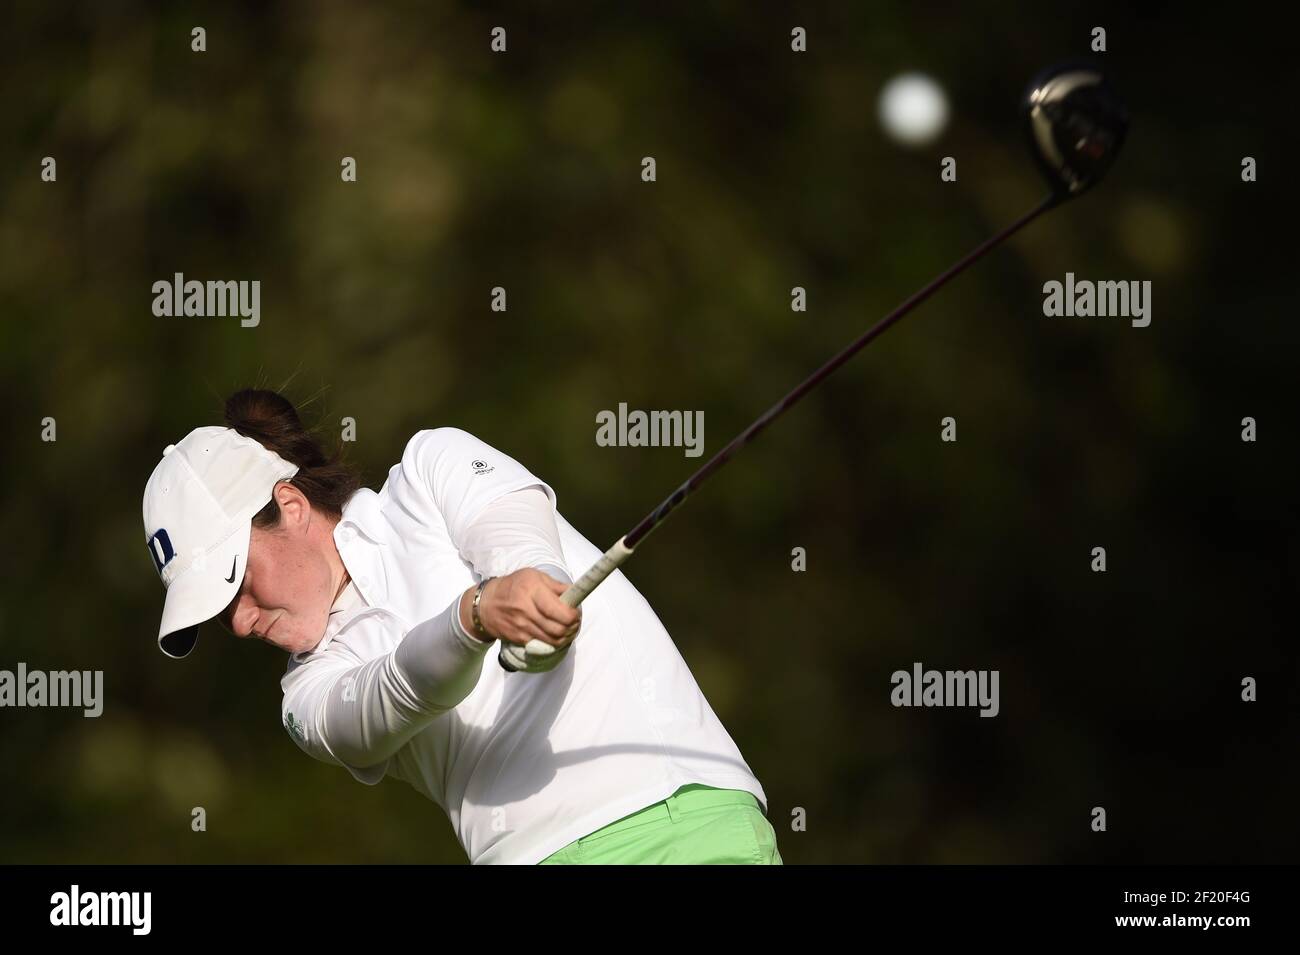 Leona Maguire d'Irlanda compete durante la seconda prova del Campionato LPGA Evian 2015, giorno 5, all'Evian Resort Golf Club, a Evian-Les-Bains, Francia, il 11 settembre 2015. Foto Philippe Millereau / KMSP / DPPI Foto Stock